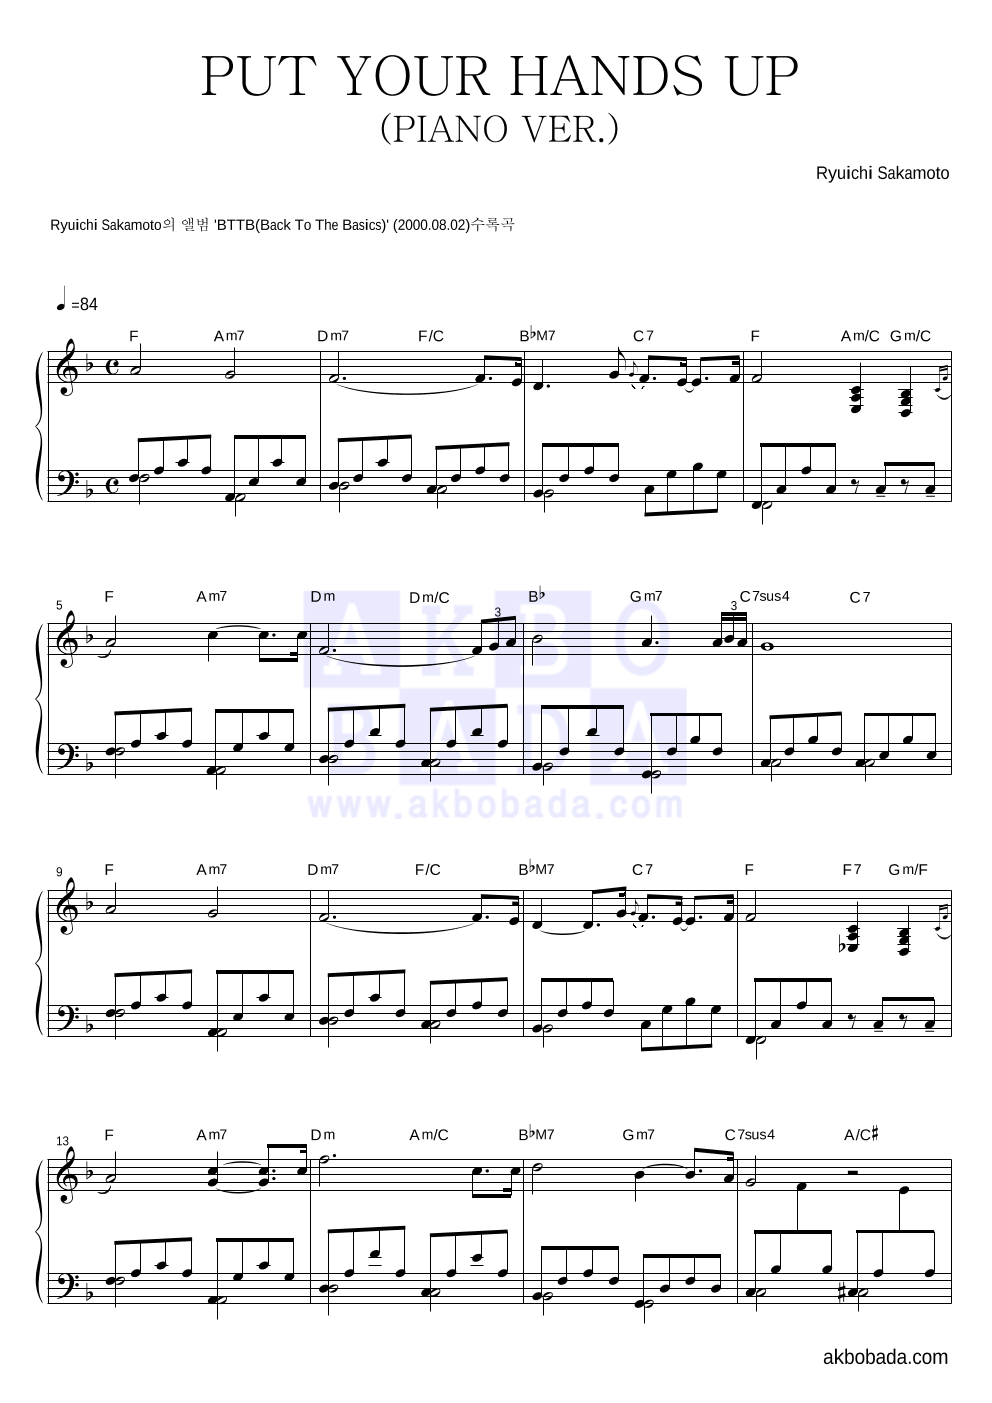 Ryuichi Sakamoto - PUT YOUR HANDS UP(PIANO VER.) 피아노 2단 악보 